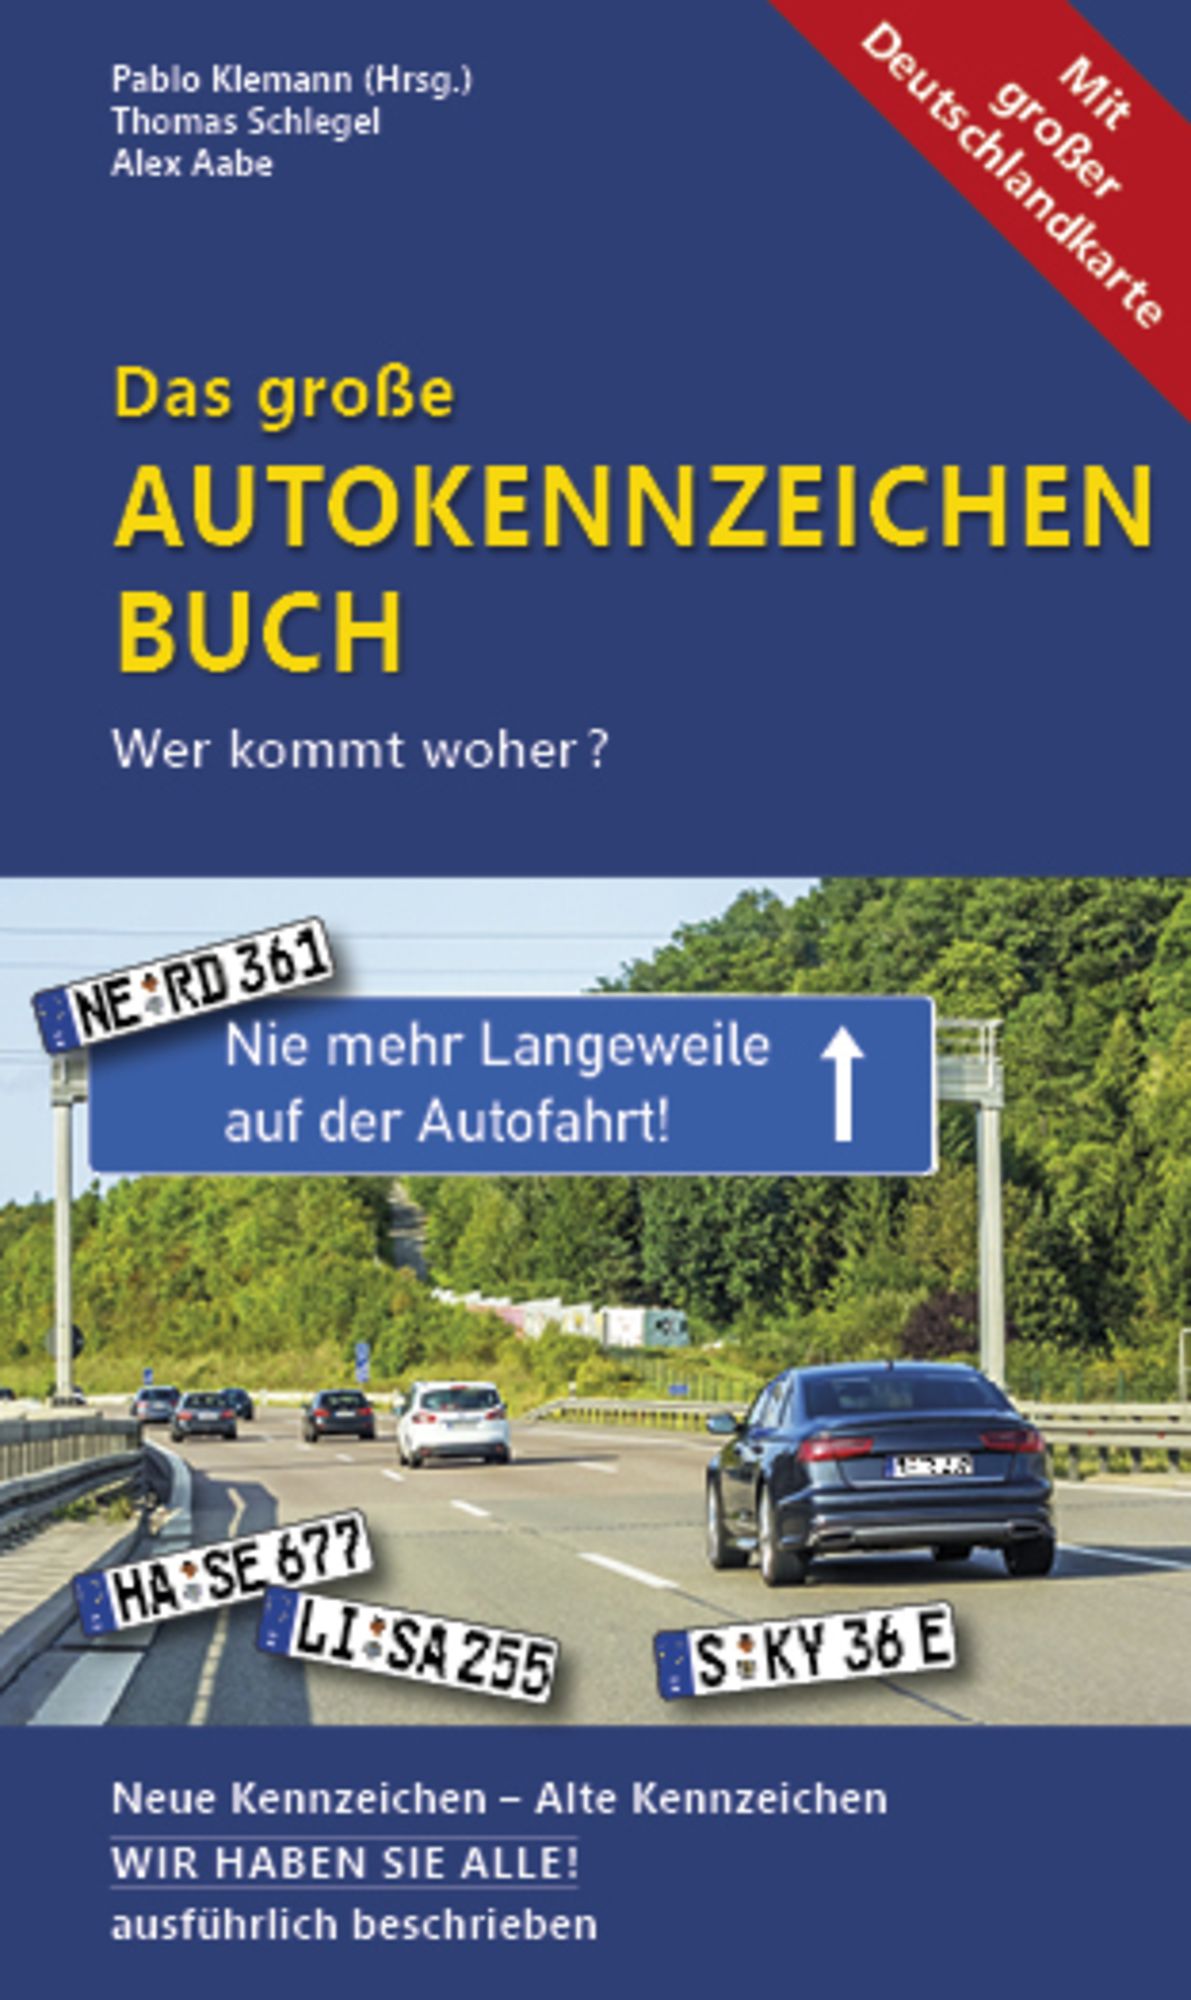 Das große Autokennzeichen Buch' von 'Thomas Schlegel' - Buch